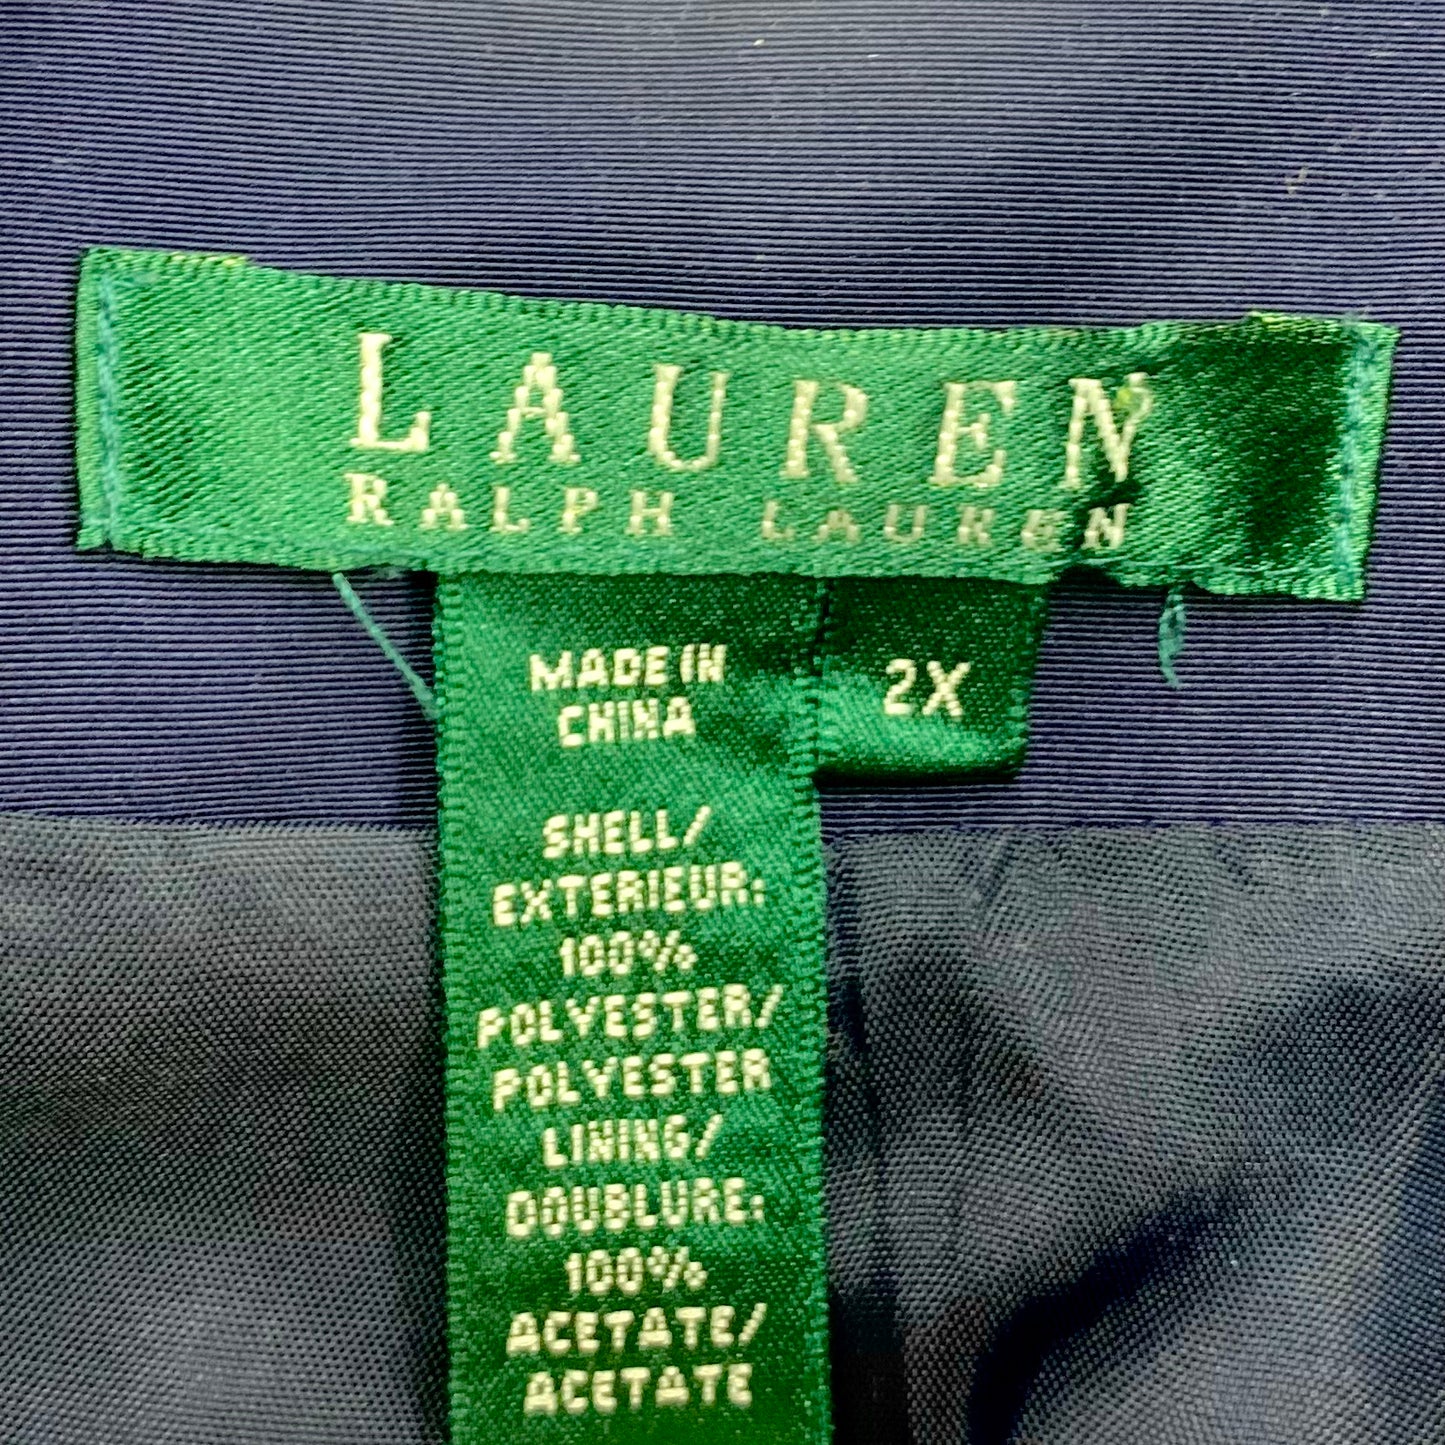 Jacket Windbreaker By Lauren By Ralph Lauren  Size: 2x